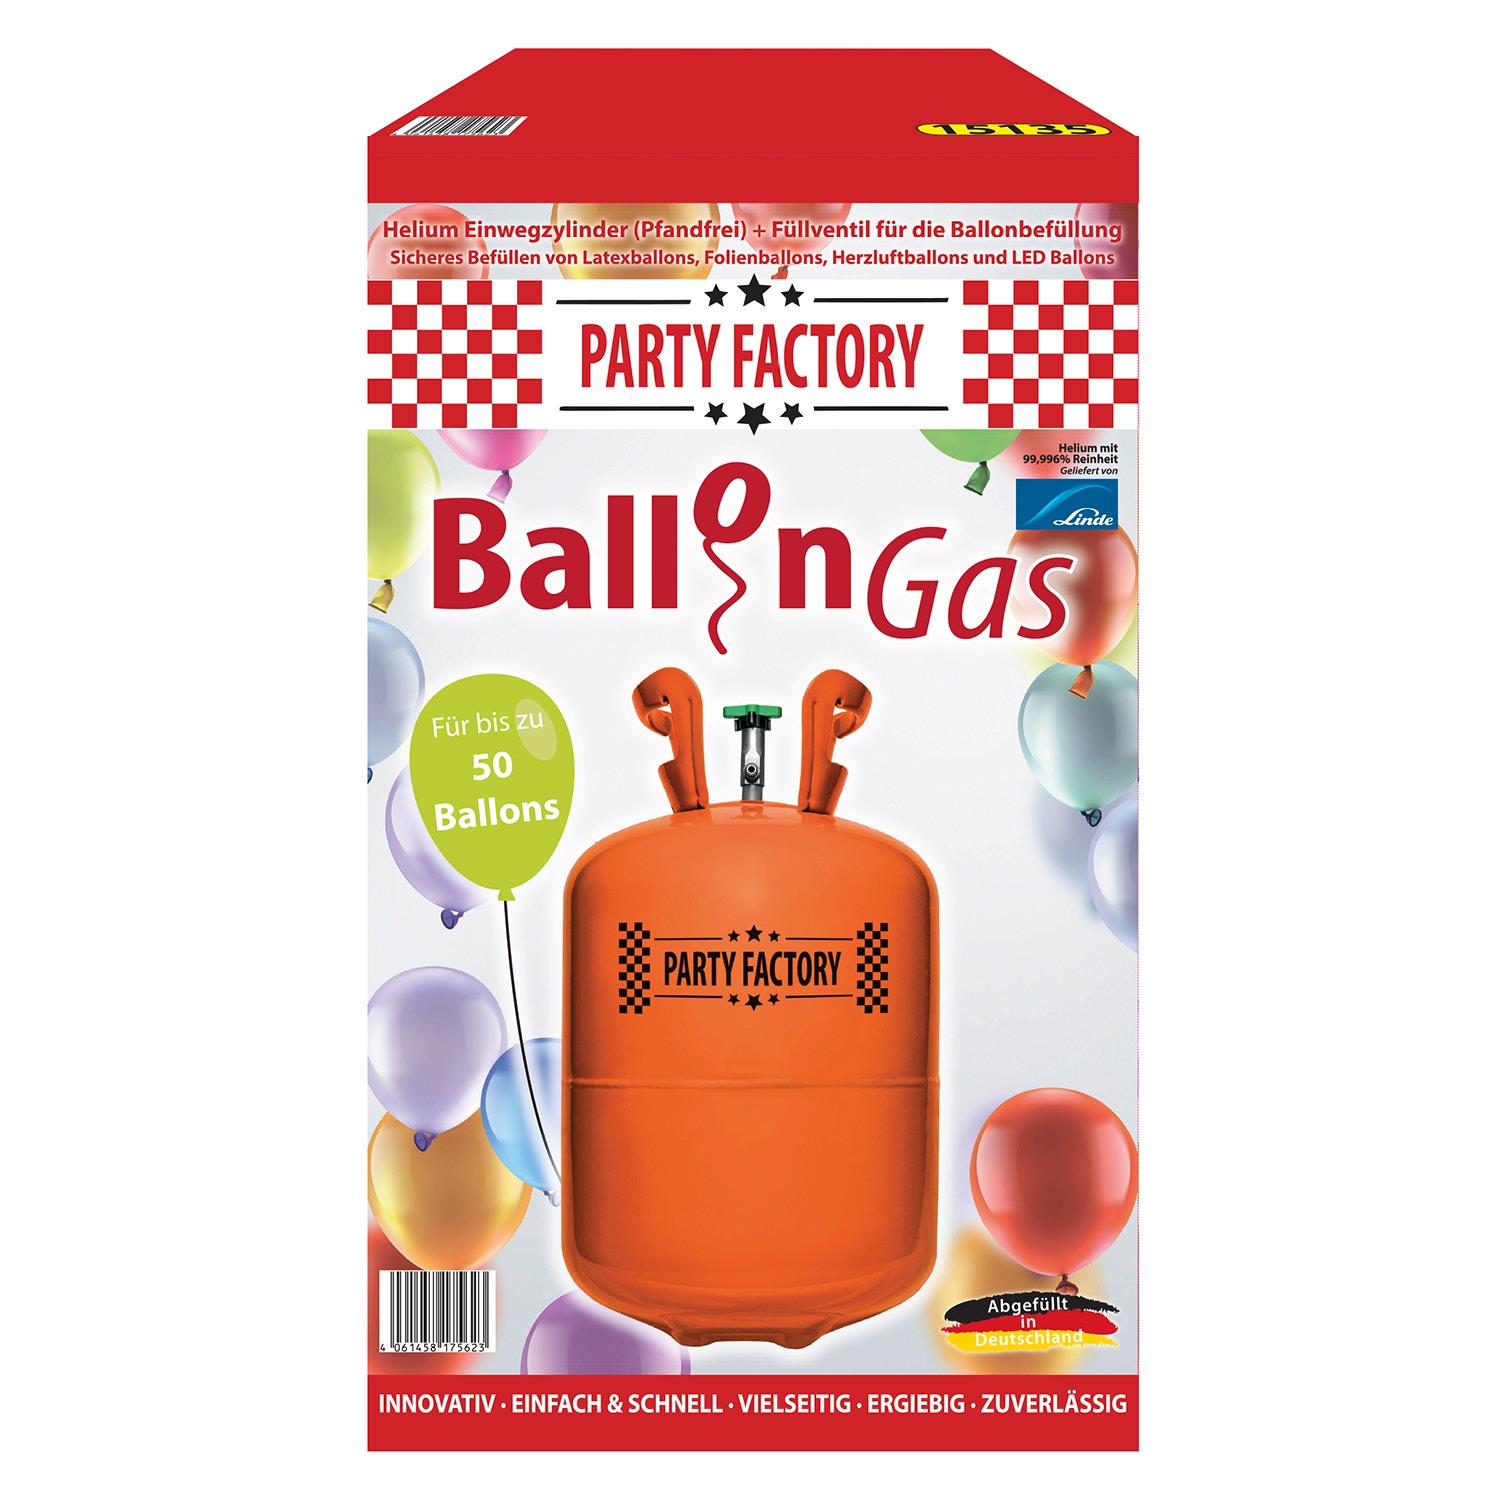 PARTY FACTORY Ballon Gas